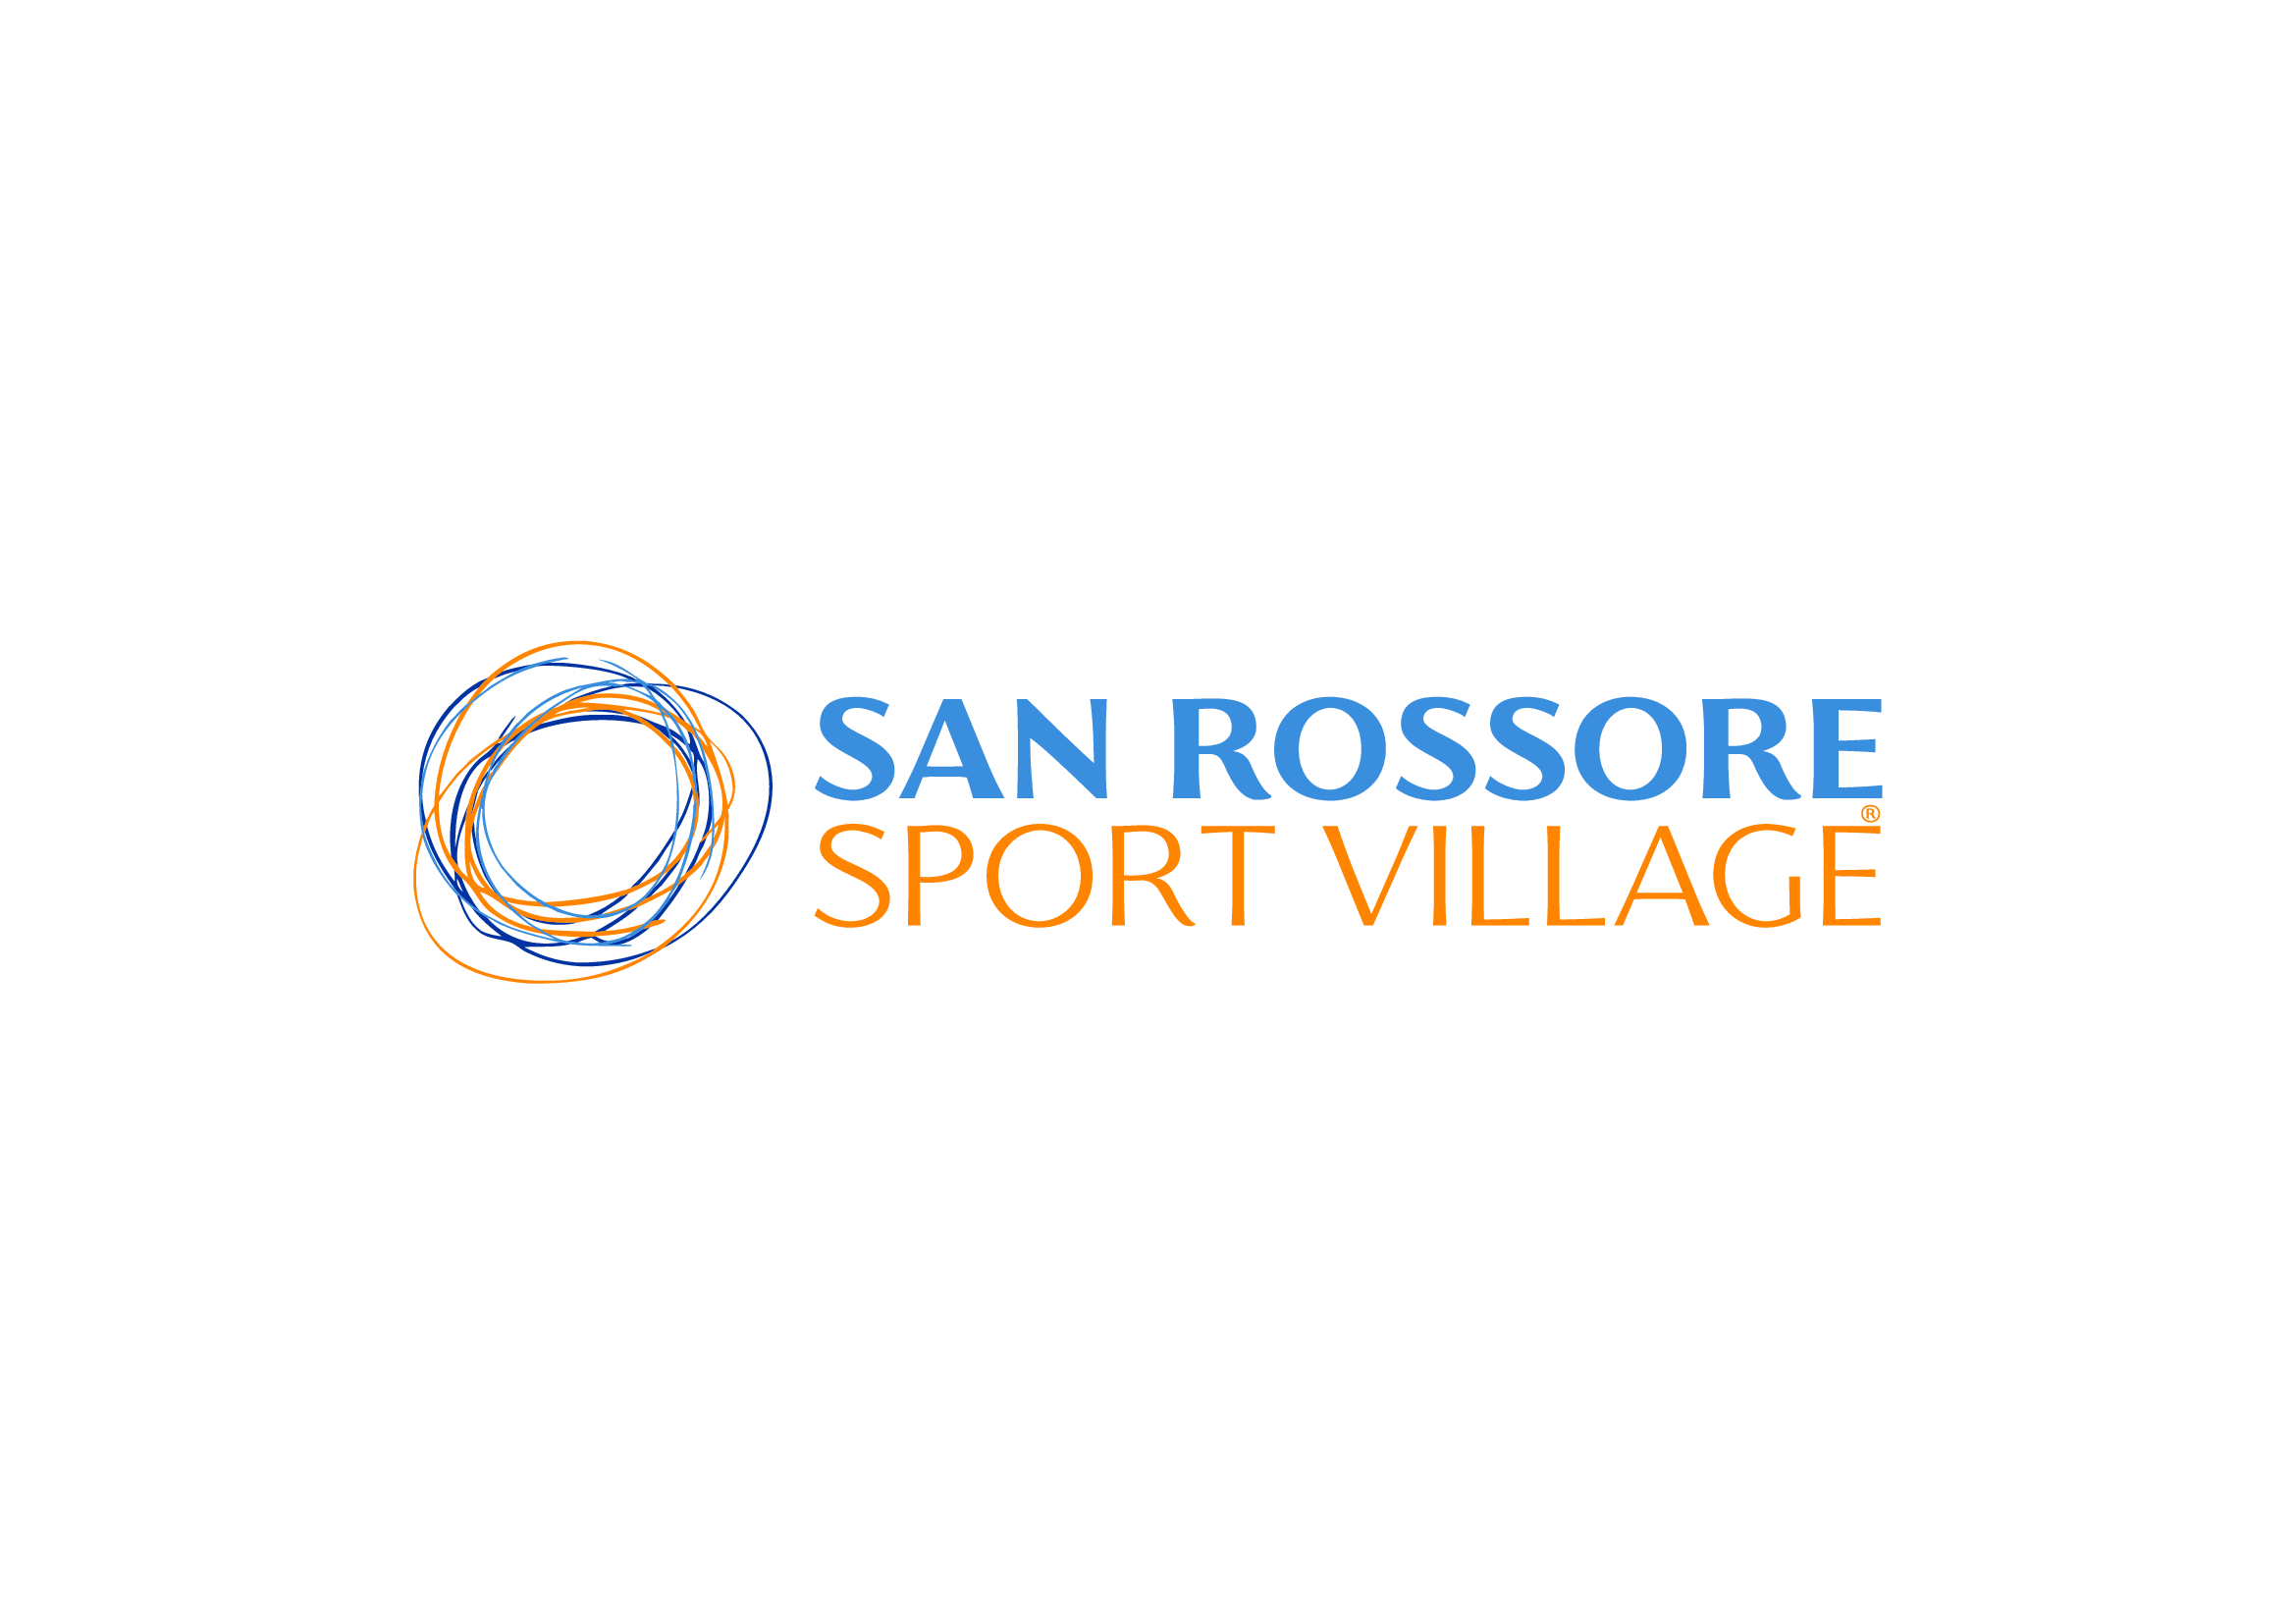 sanrossore_sportvillage_logo_300720-01_orizzontale_colori